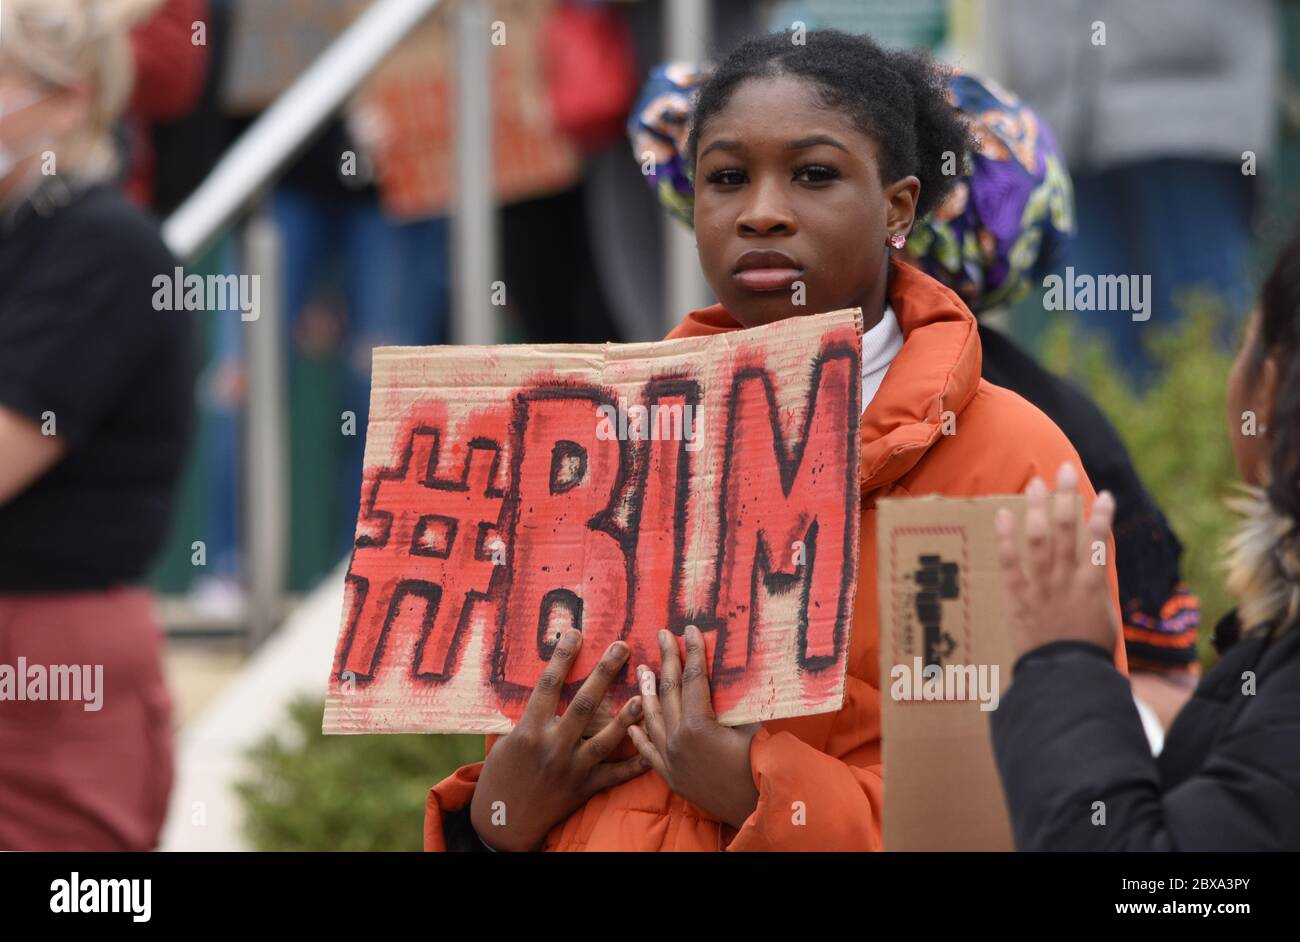 Una joven británica negra protestando contra el racismo Black Lives Matter en el Reino Unido tras el asesinato ilegal de George Floyd en los Estados Unidos Foto de stock